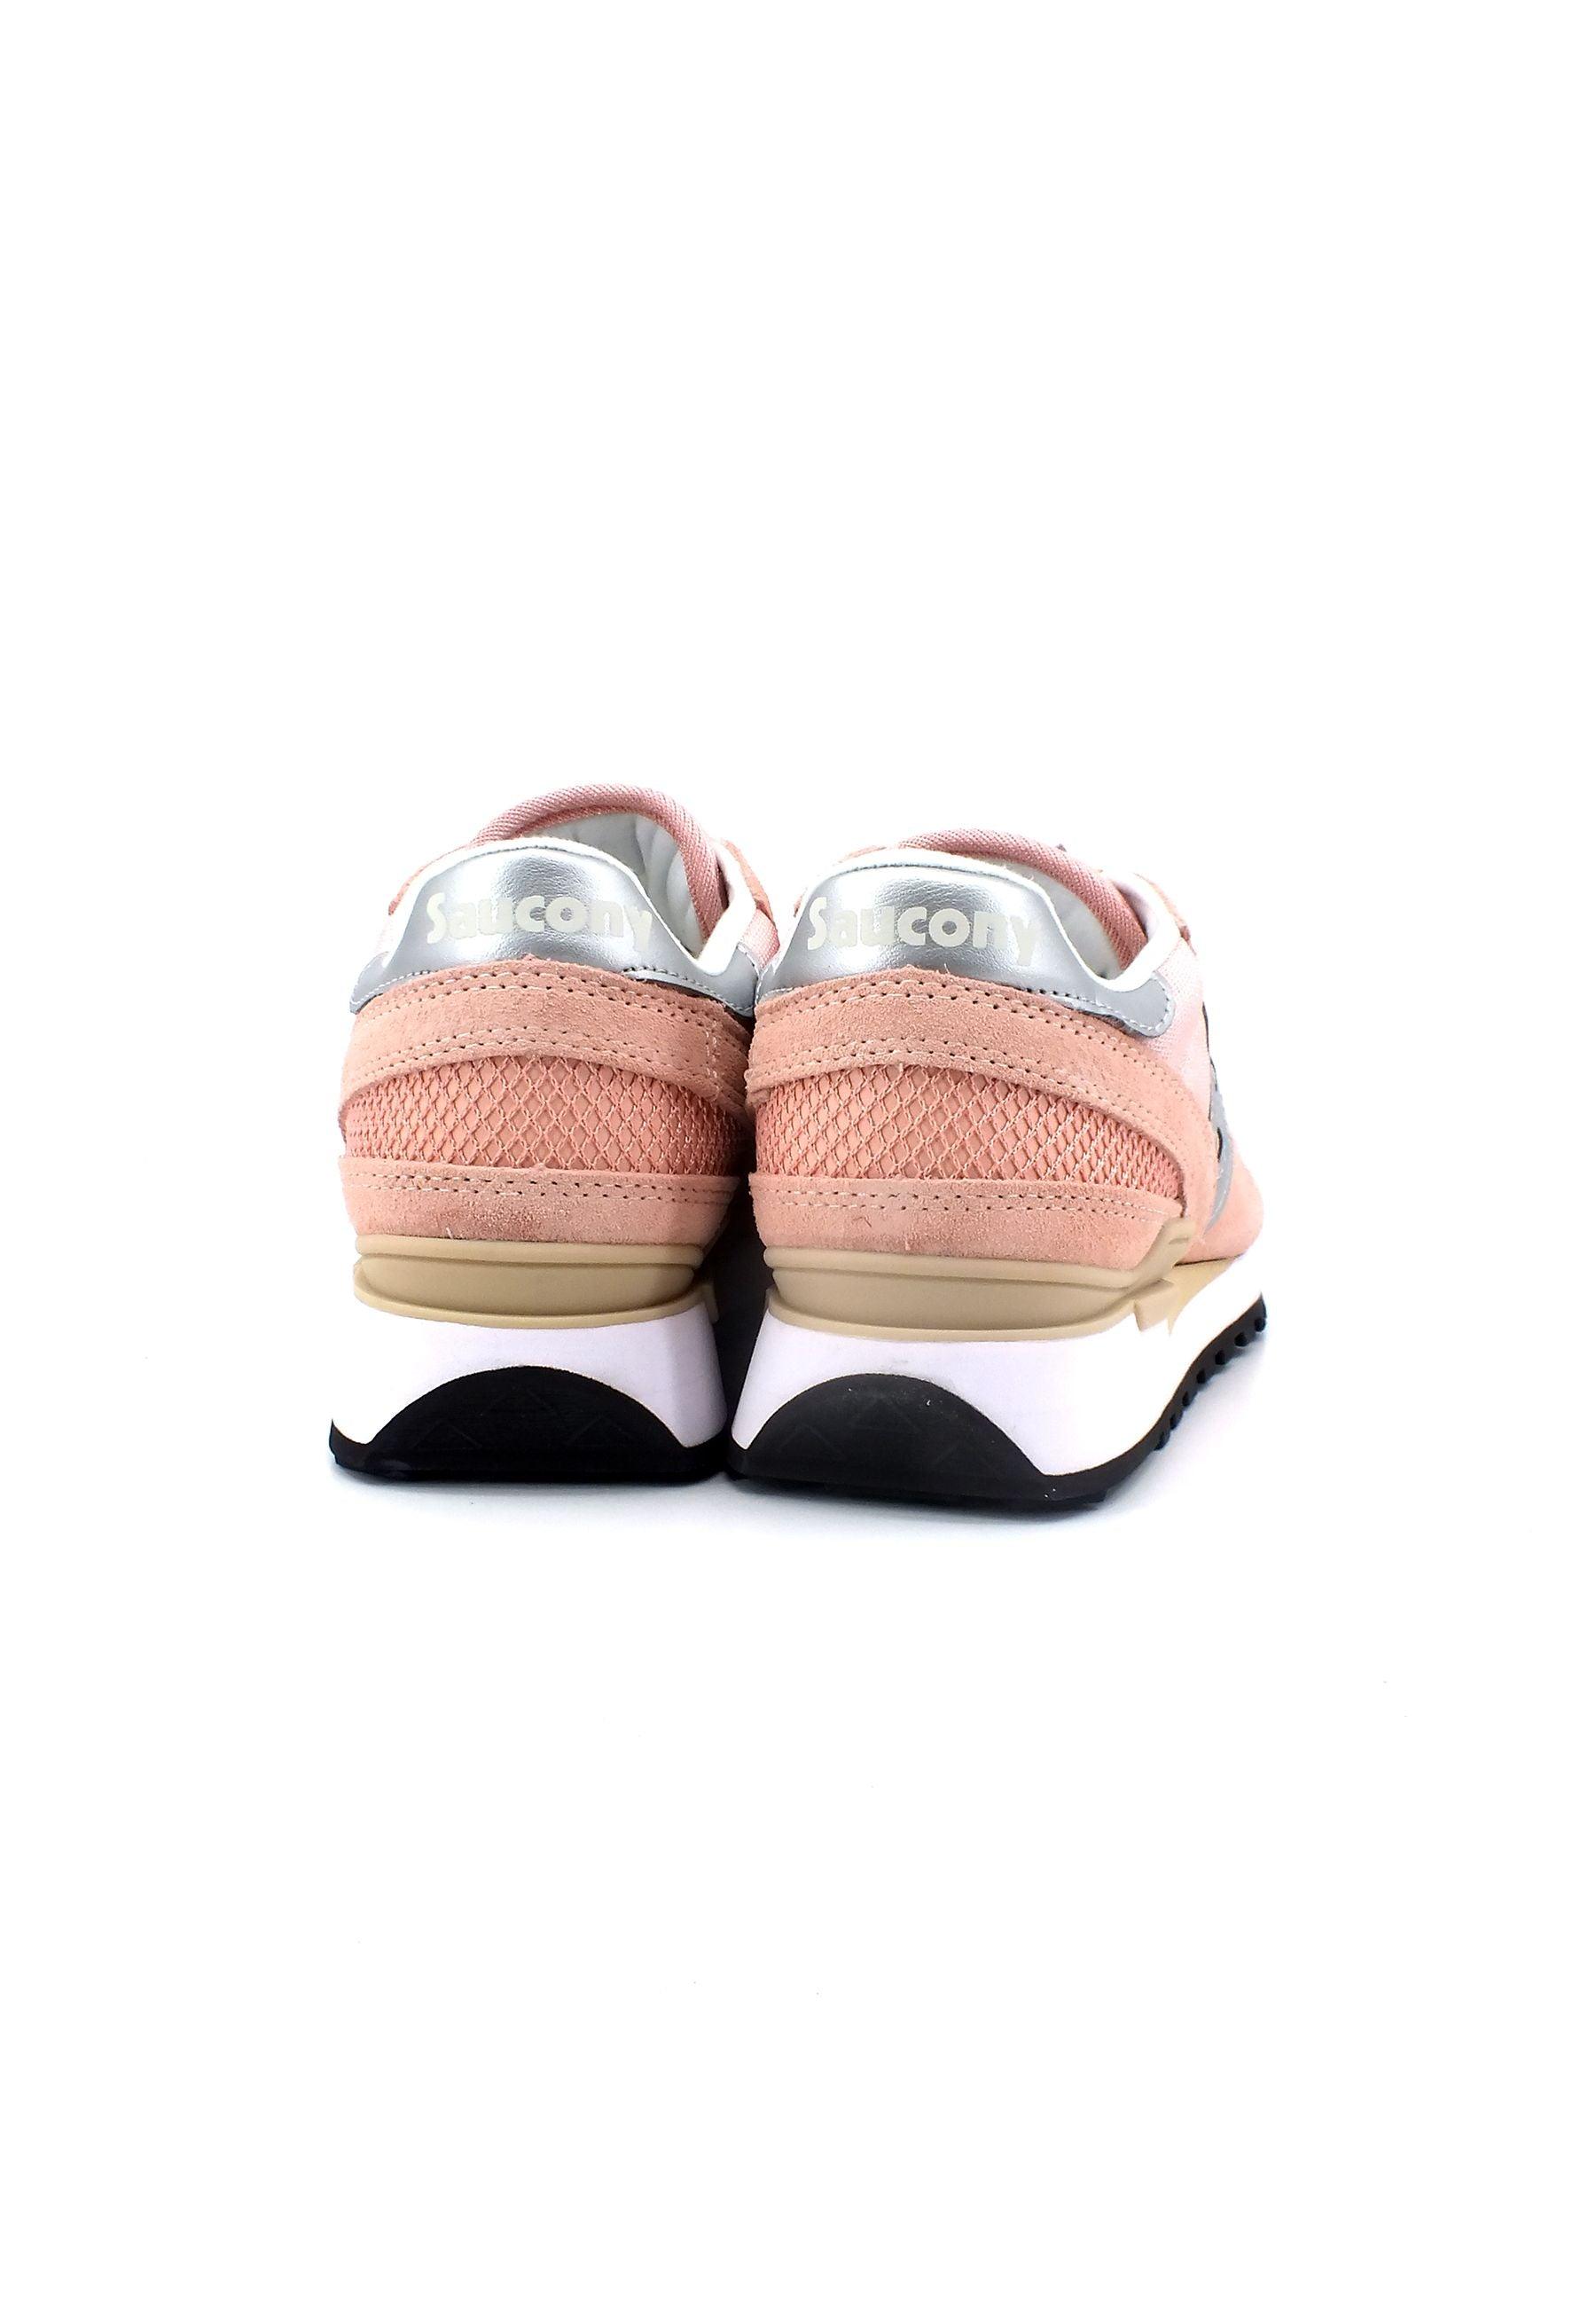 SAUCONY Shadow Original Sneaker Donna Pink Silver S1108-810 - Sandrini Calzature e Abbigliamento